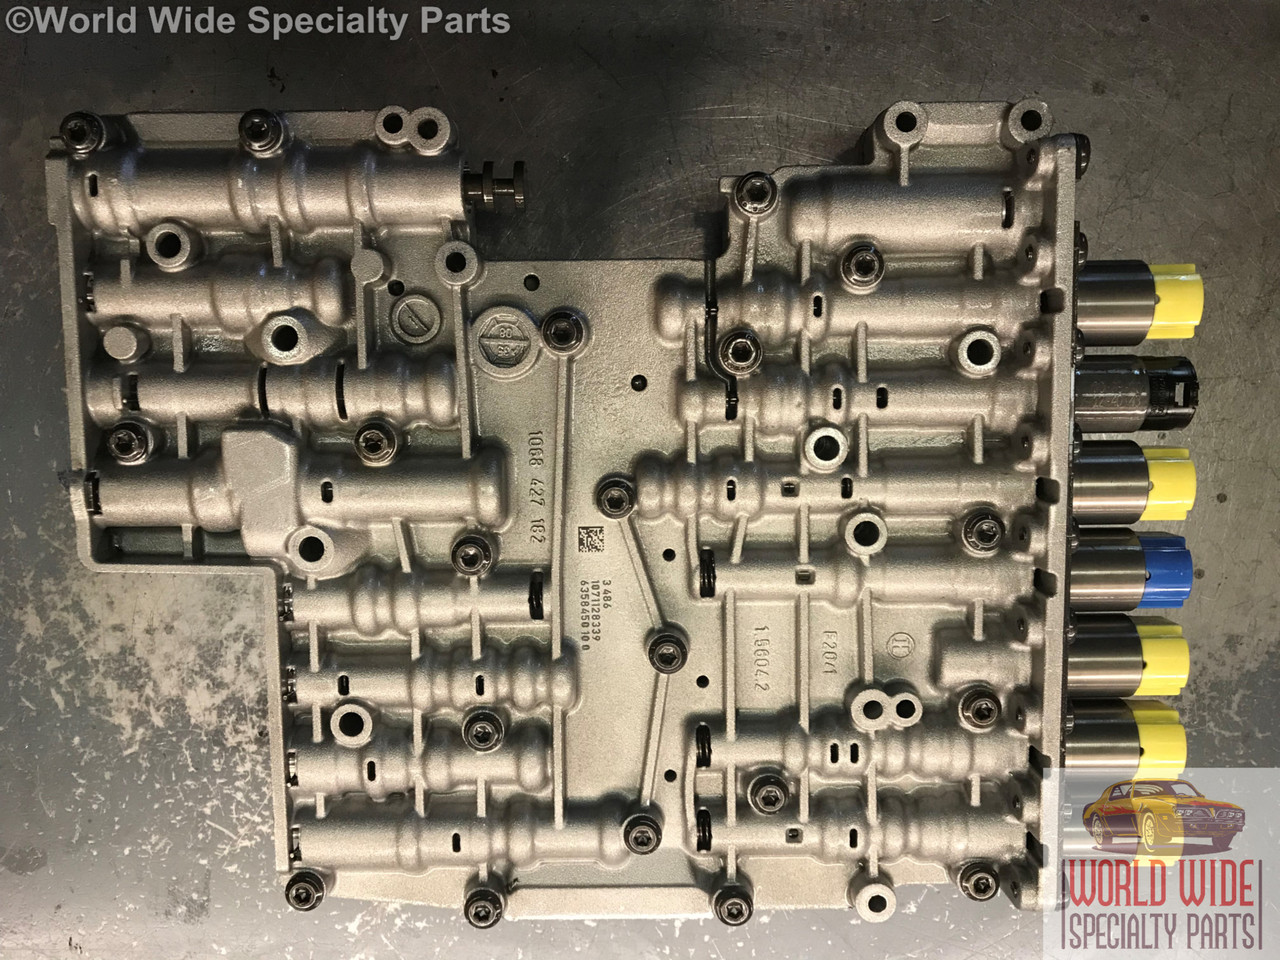 Audi ZF 6HP26, 09E Valve Body Rebuild Service